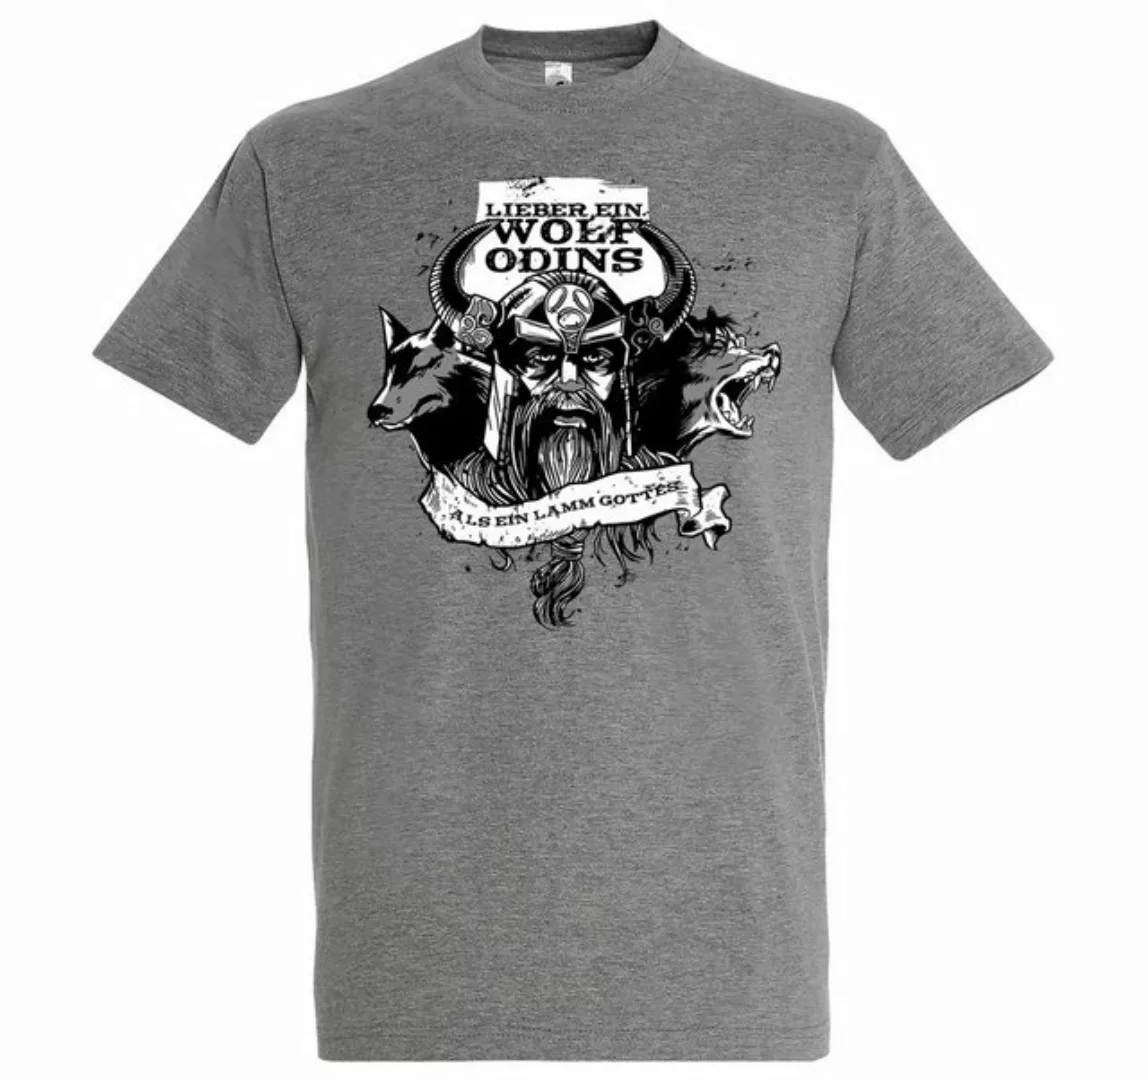 Youth Designz Print-Shirt "Lieber ein Wolf Odins" Herren T-Shirt mit lustig günstig online kaufen